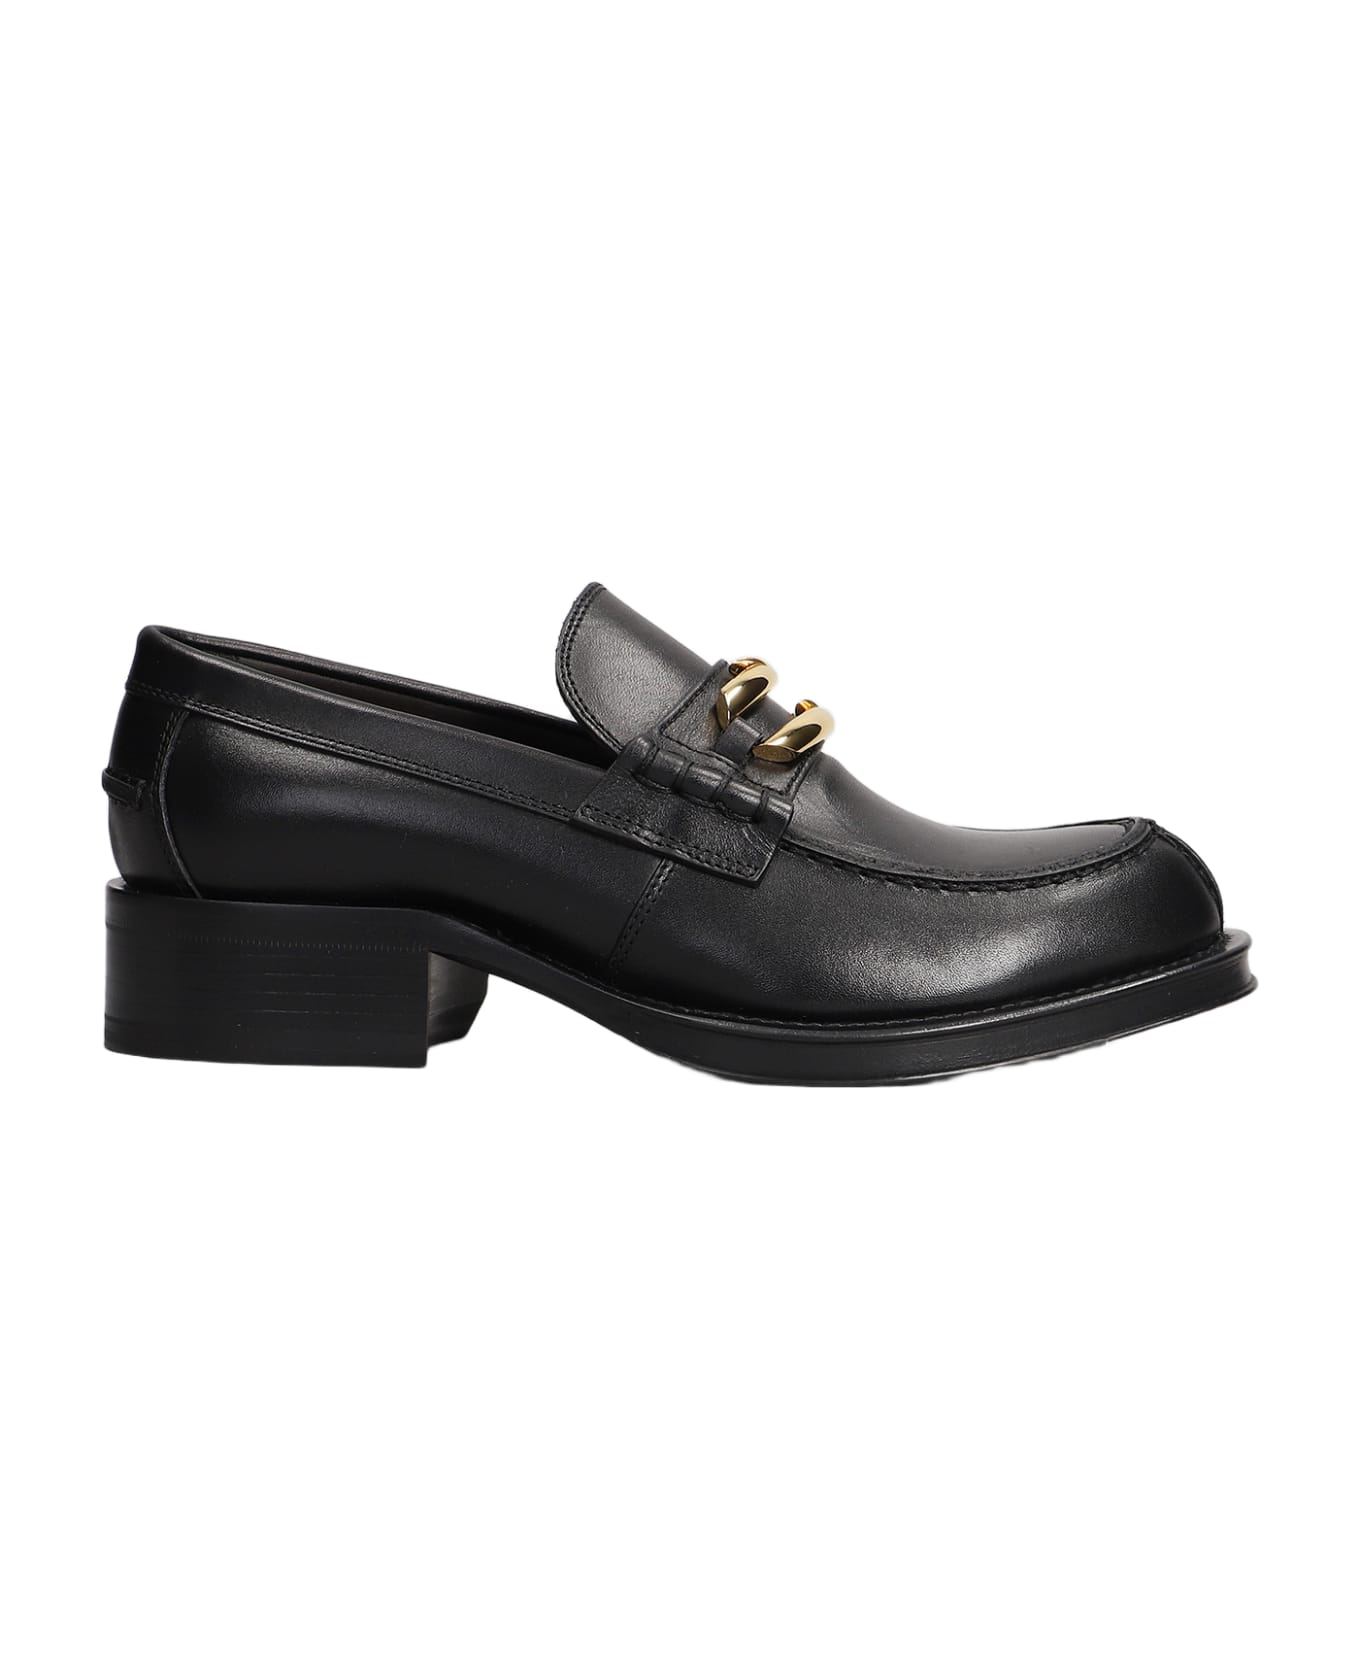 Lanvin Loafers In Black Leather - Black フラットシューズ